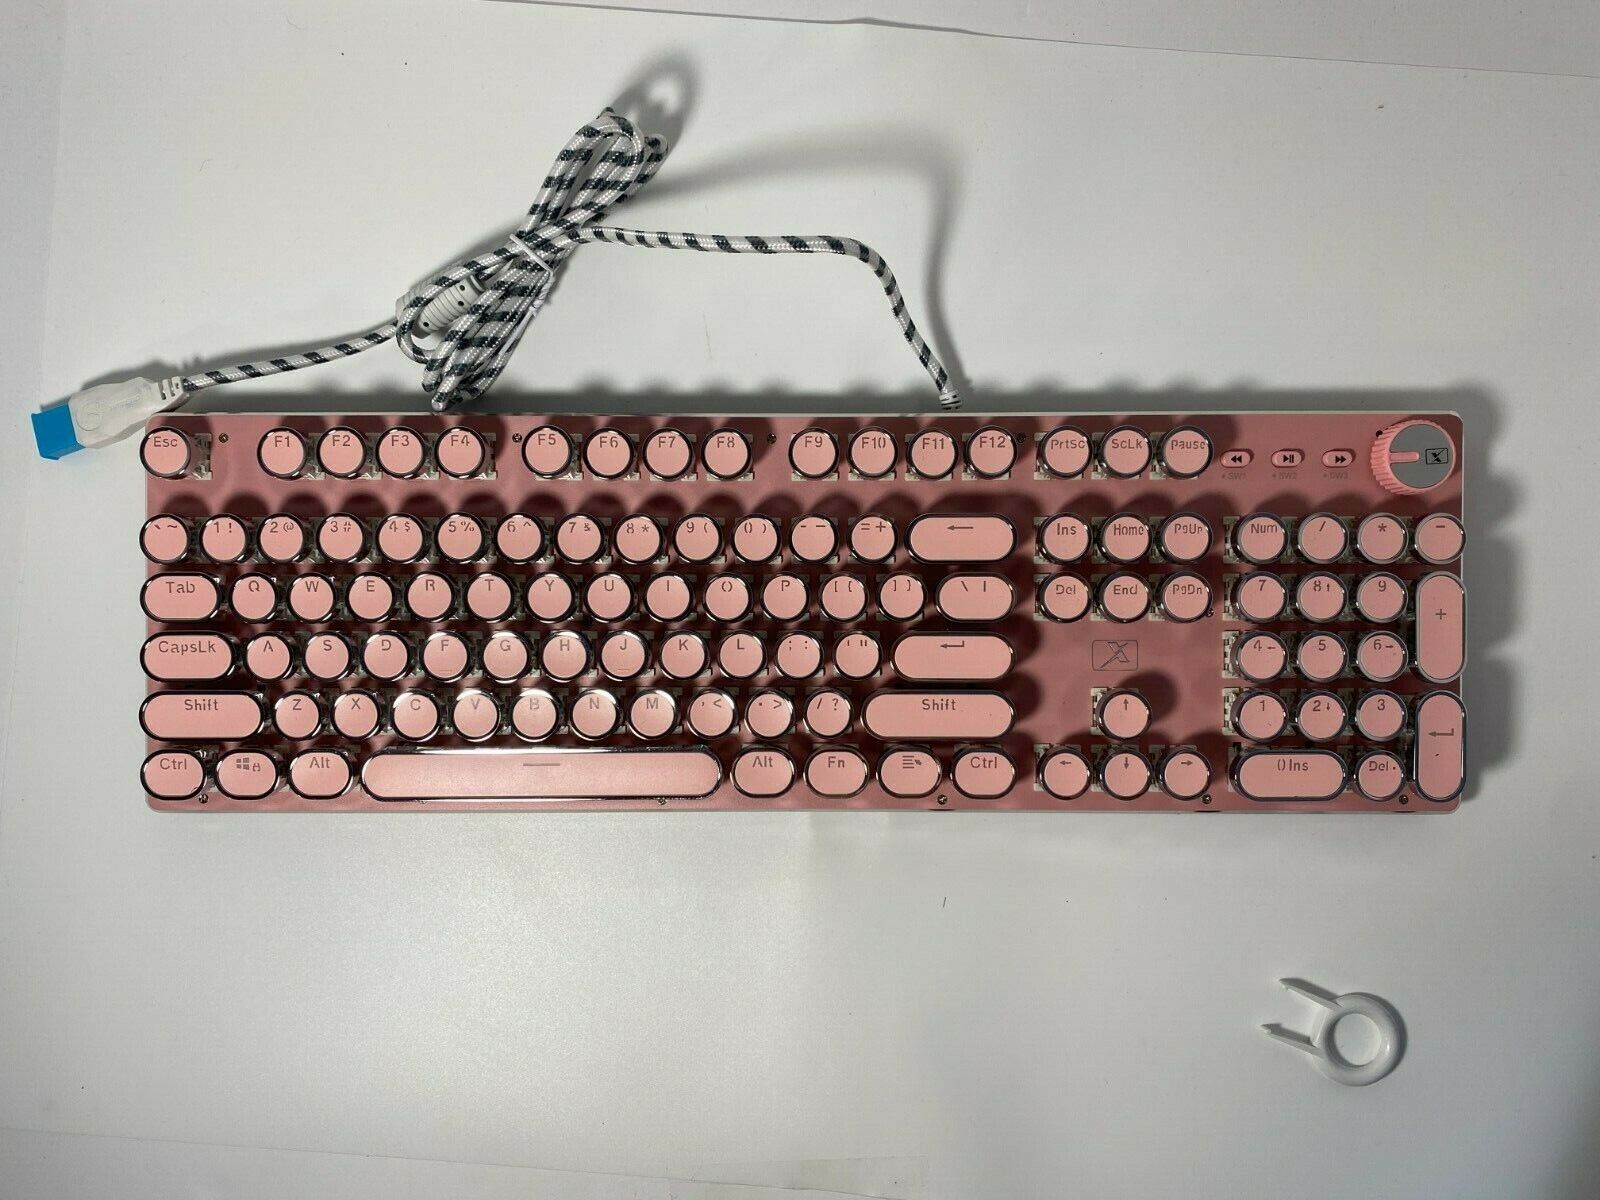 Retro Steampunk Typewriter-Style Gaming Keyboard, Stylish Pink